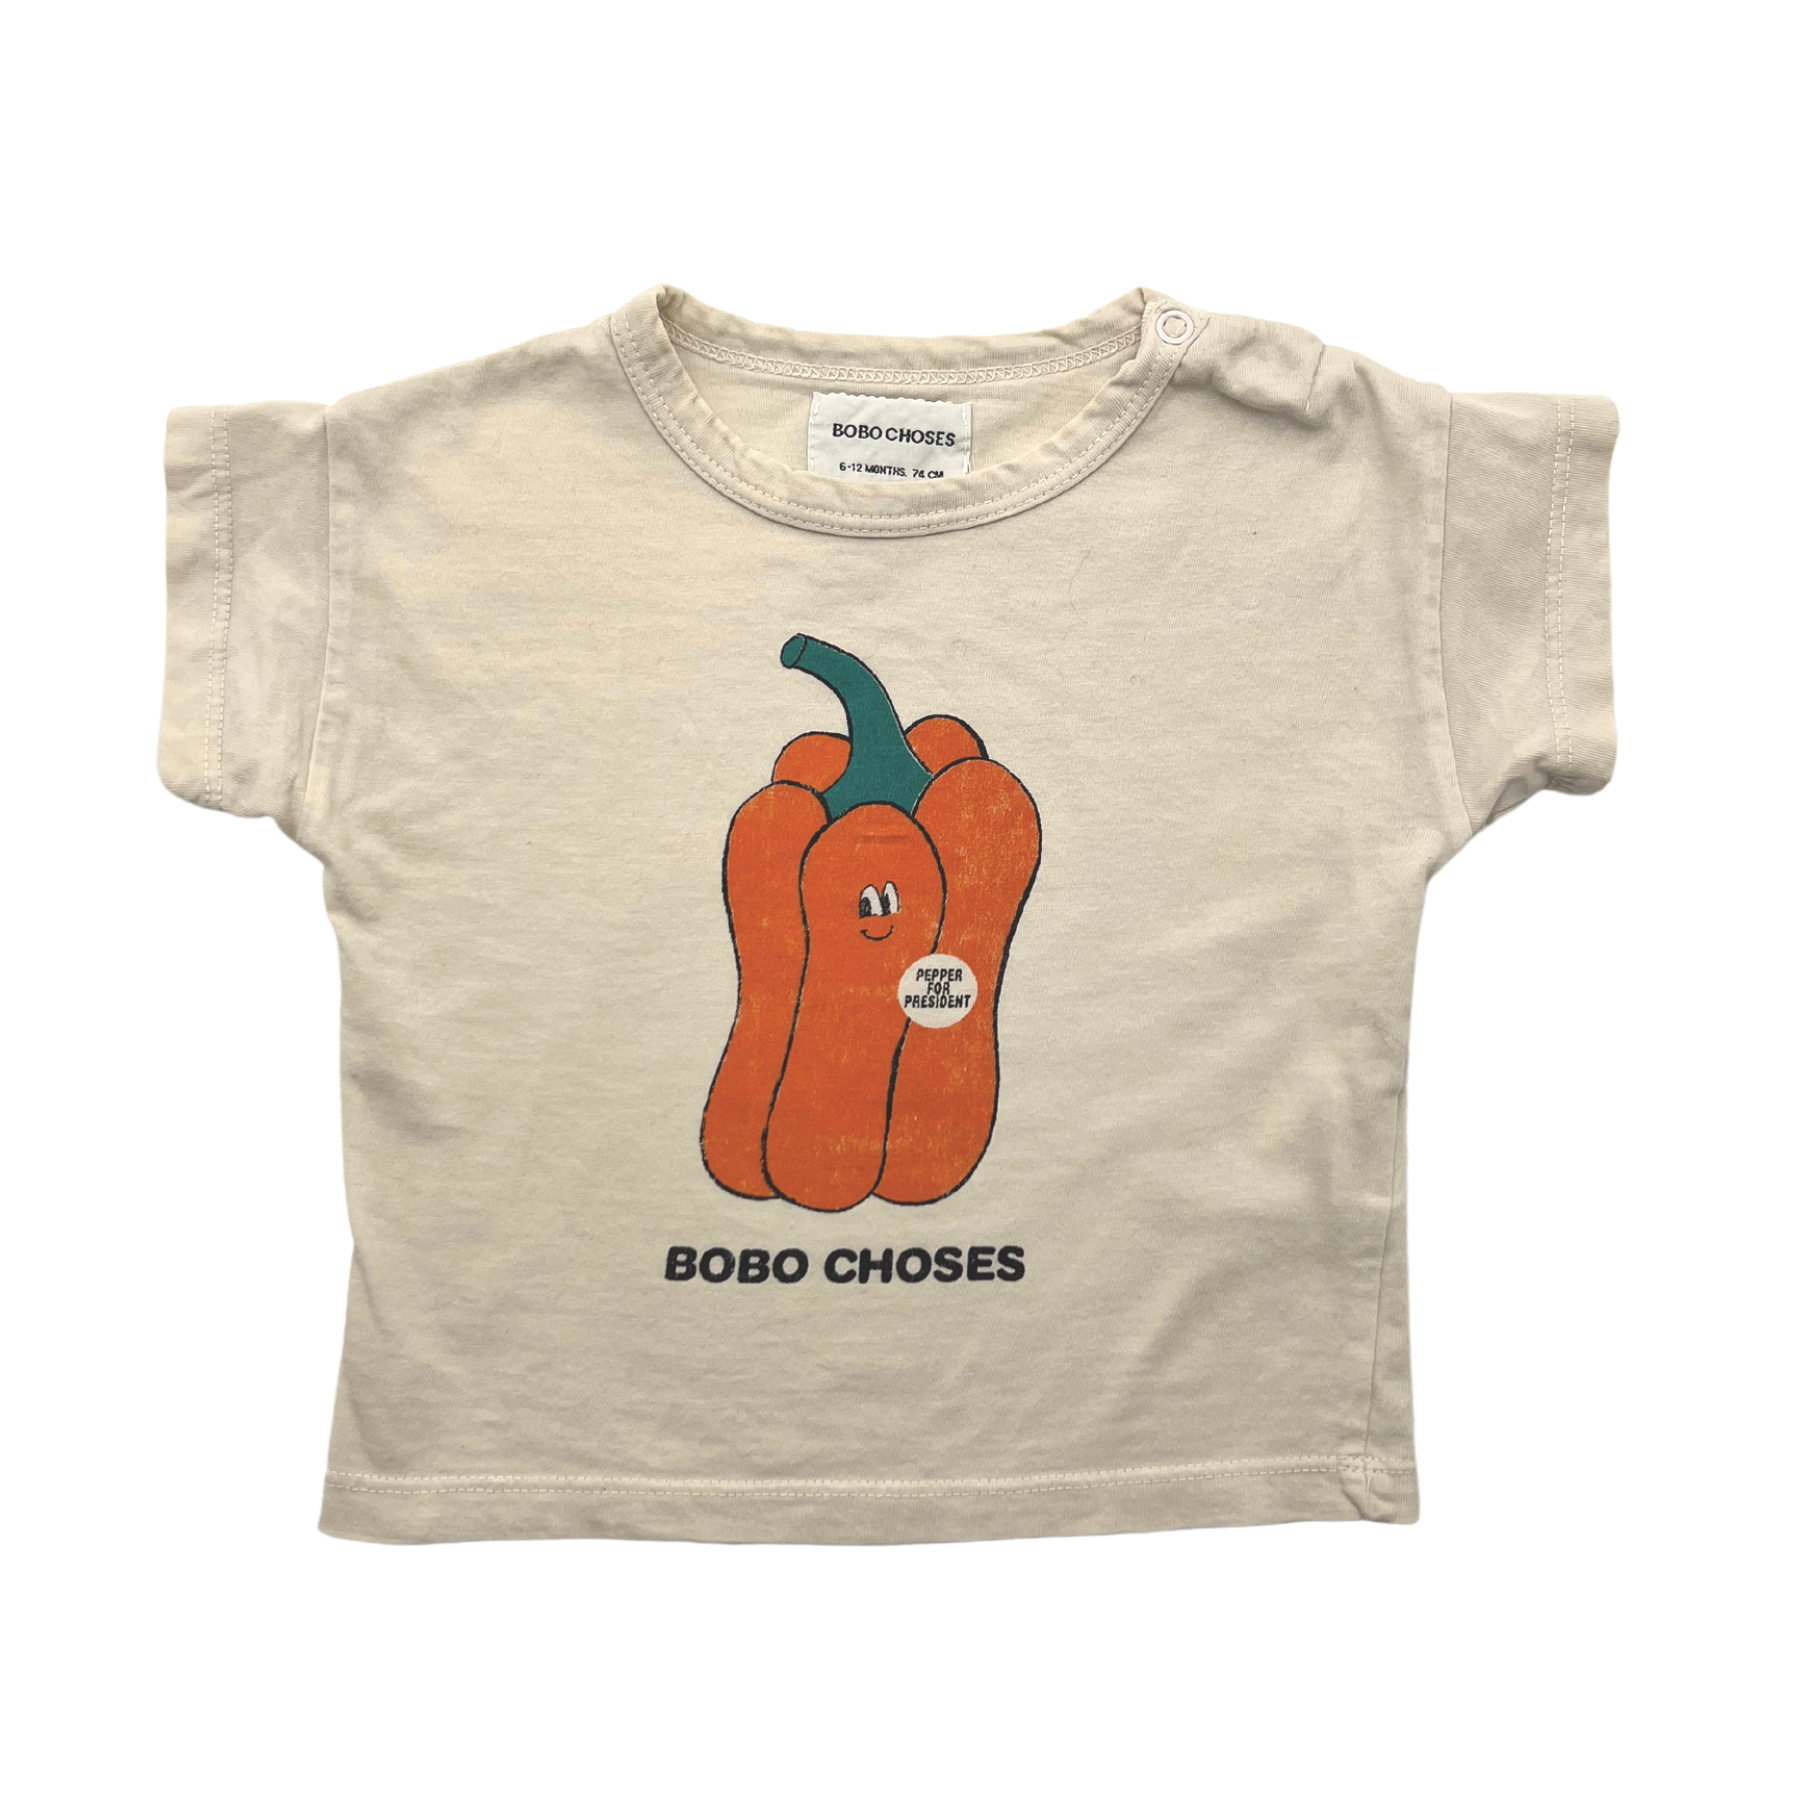 BOBO CHOSES - T-shirt "pepper for president" - 6/12 mois